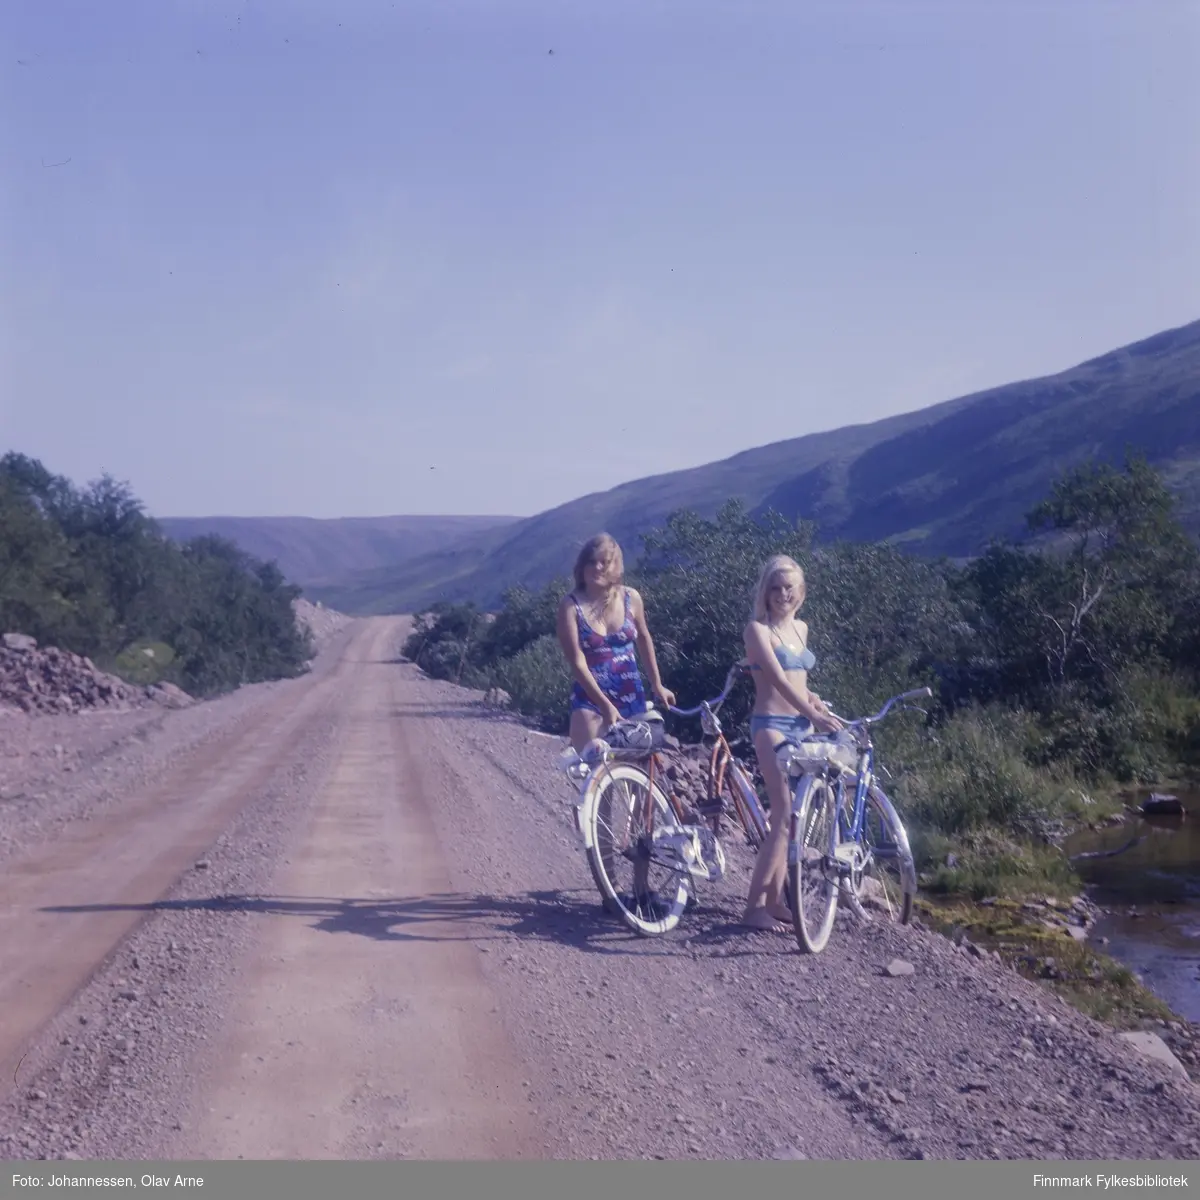 Foto av bilvei omringet av bjørkeskog, trolig Syltefjorddalen

To jenter står i badedrakt ved siden av hver sin sykkel

Foto trolig tatt på 1960/70-tallet